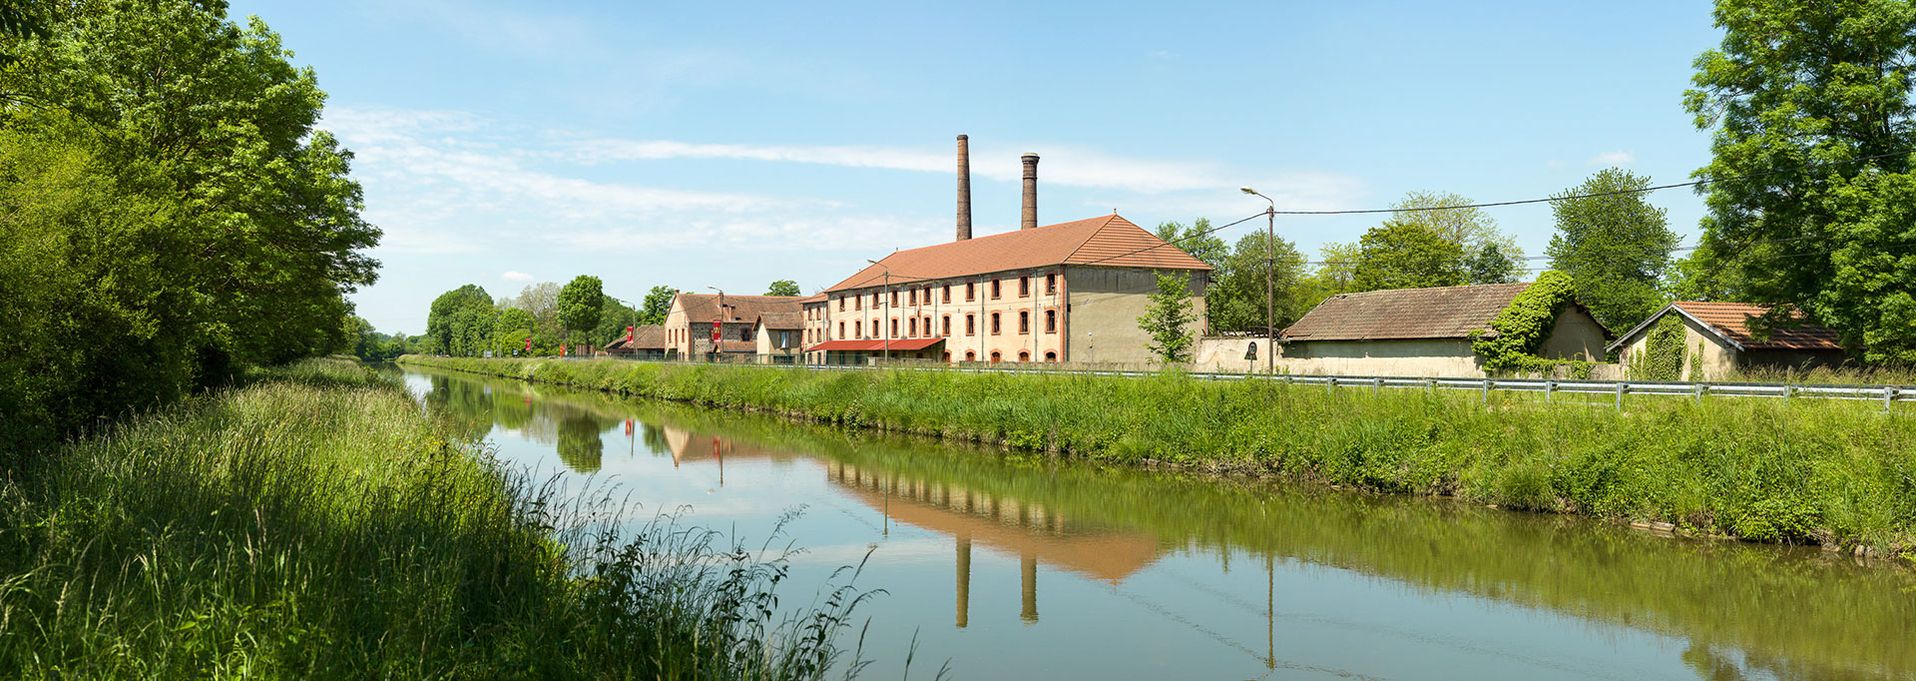 Ancienne briqueterie de Ciry-le-Noble sur la rive droite du canal, longeant le bief 15 du versant Loire.